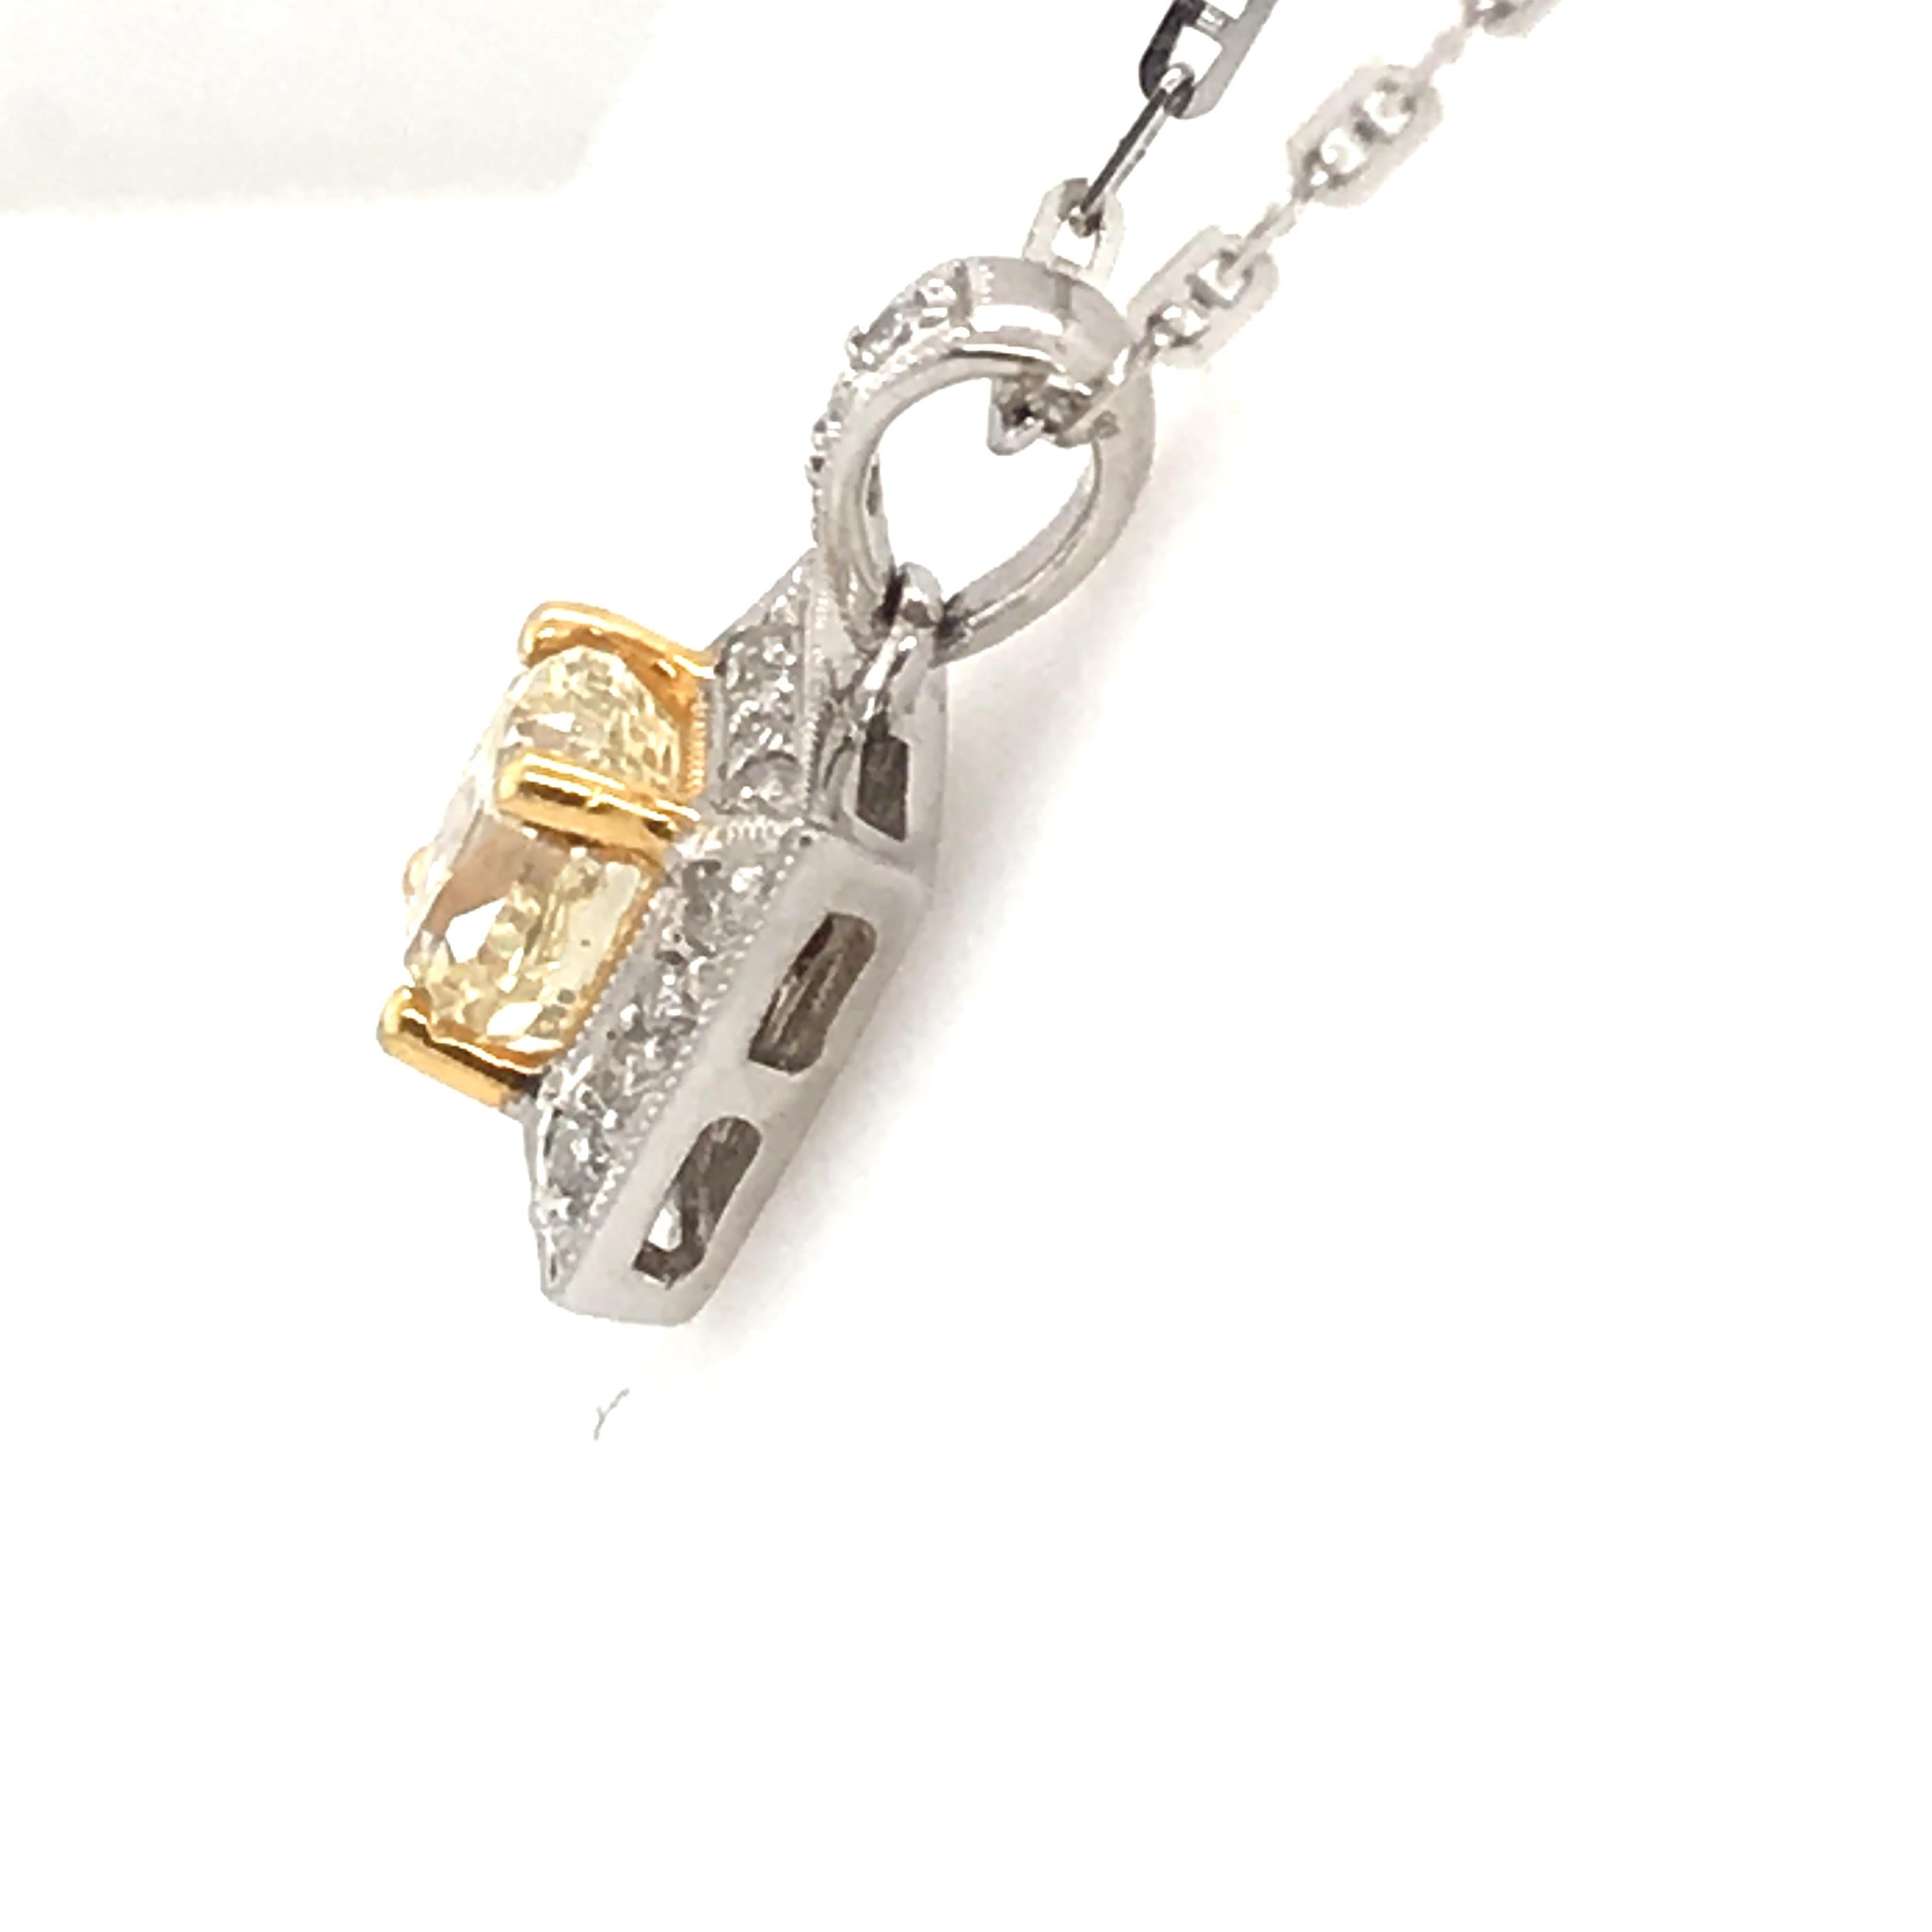 Princess Cut 1.21 Carat Natural Yellow Diamond Pendant with 18 Karat Gold For Sale